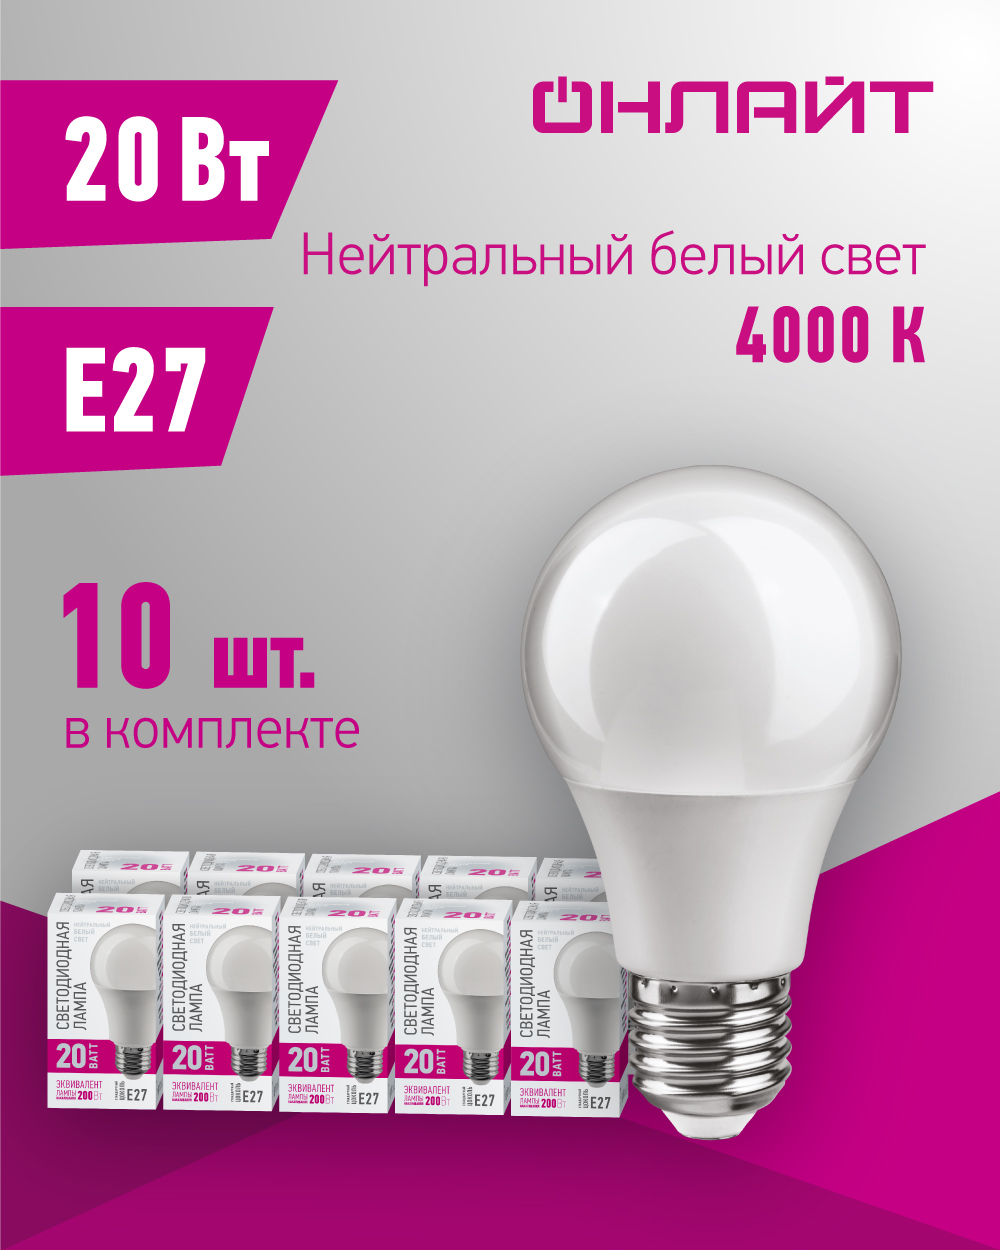 Светодиодная лампа Онлайт 90 444, 20 Вт, груша, E27, дневной свет 4000К, упаковка 10 шт